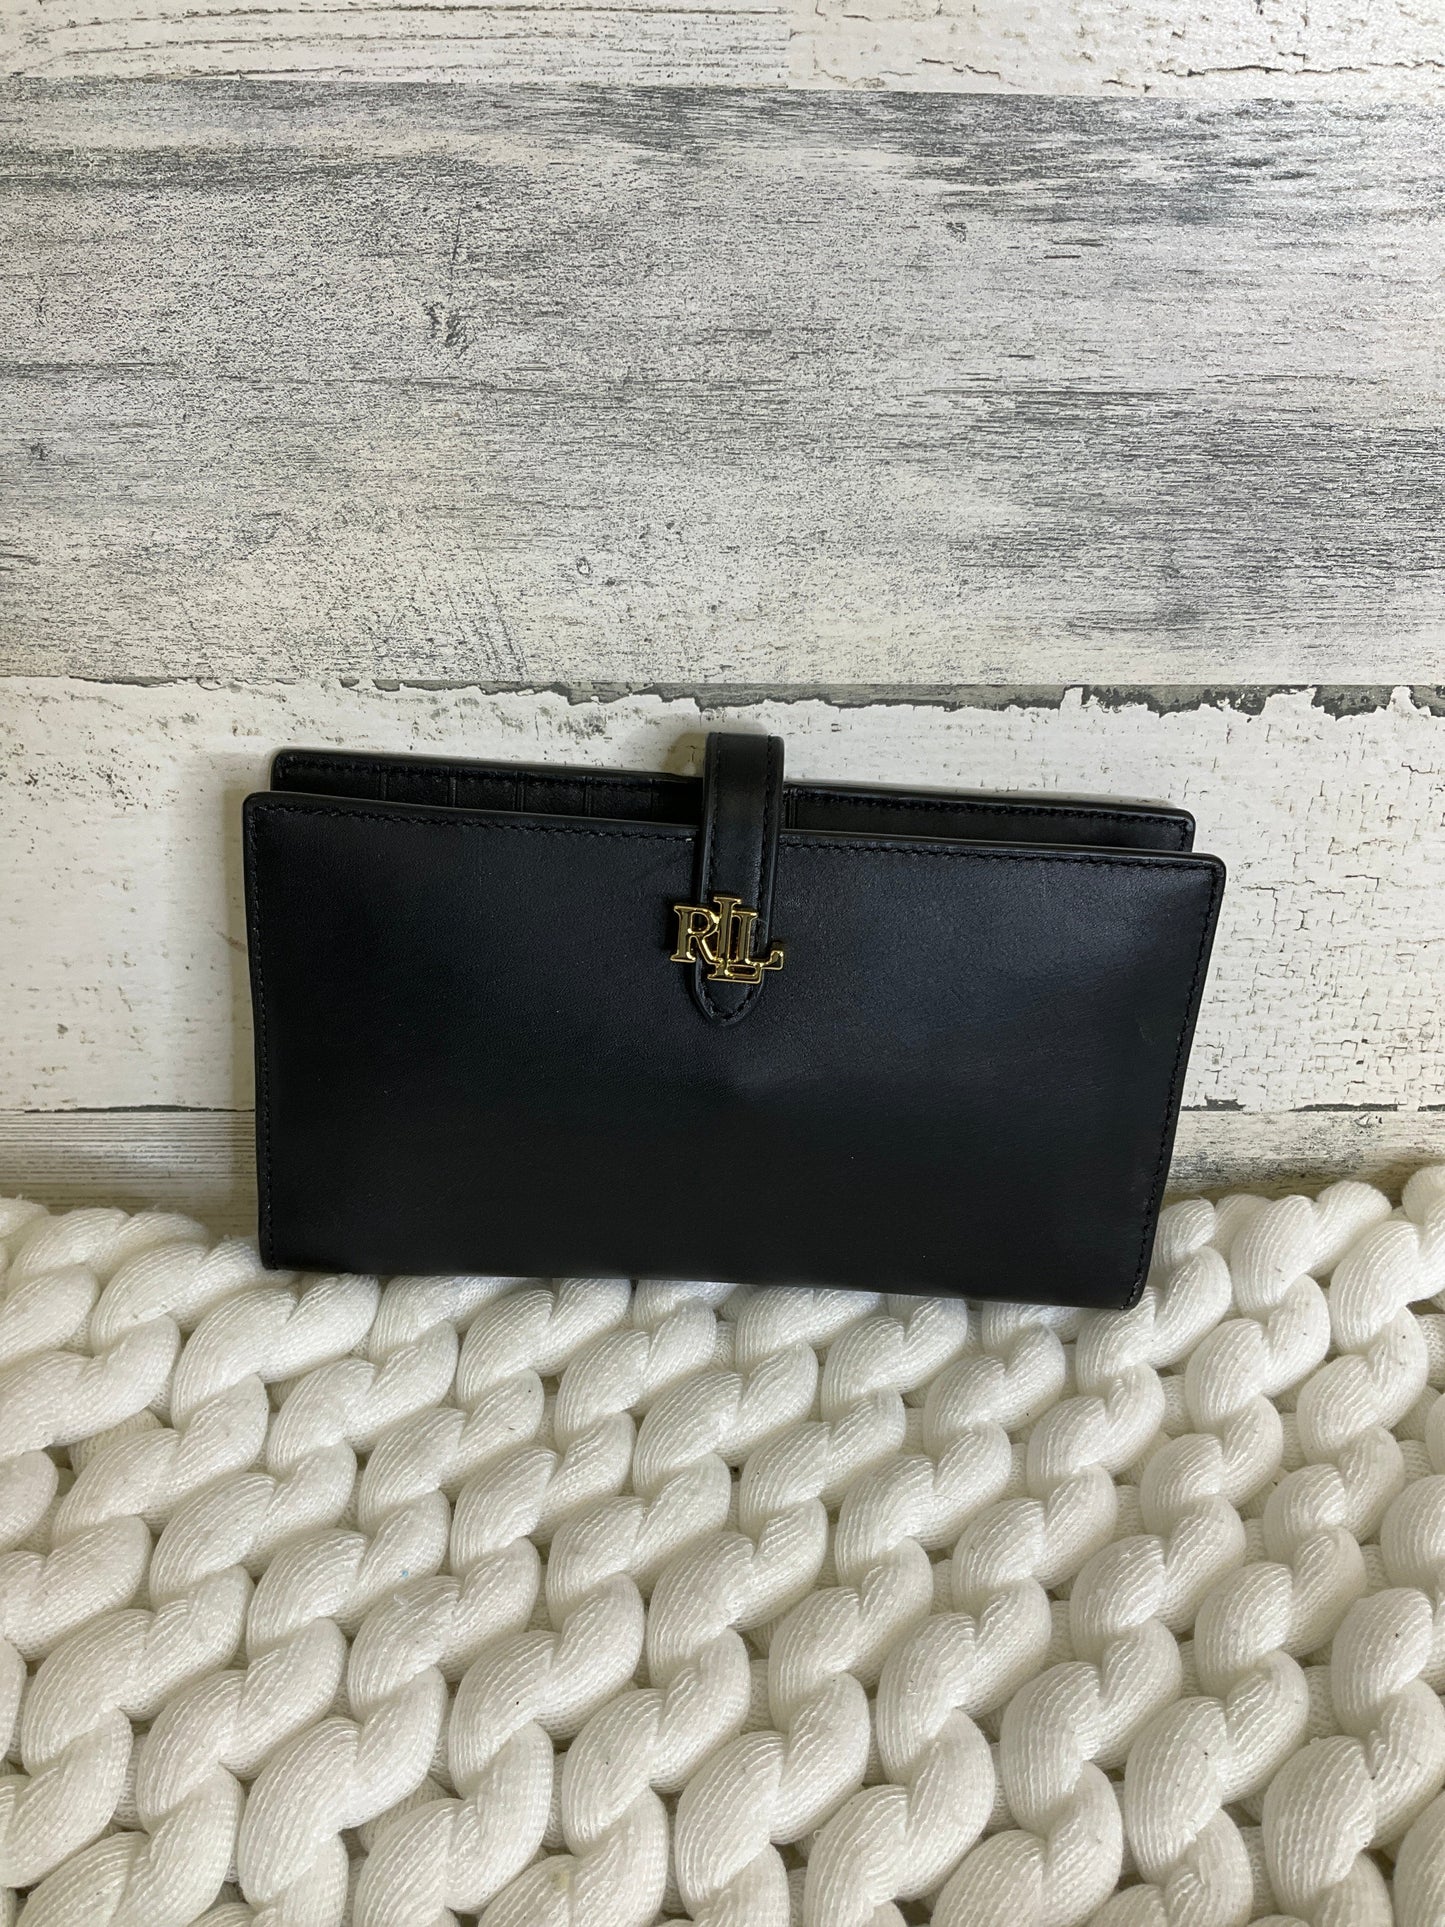 Wallet Leather Ralph Lauren, Size Large